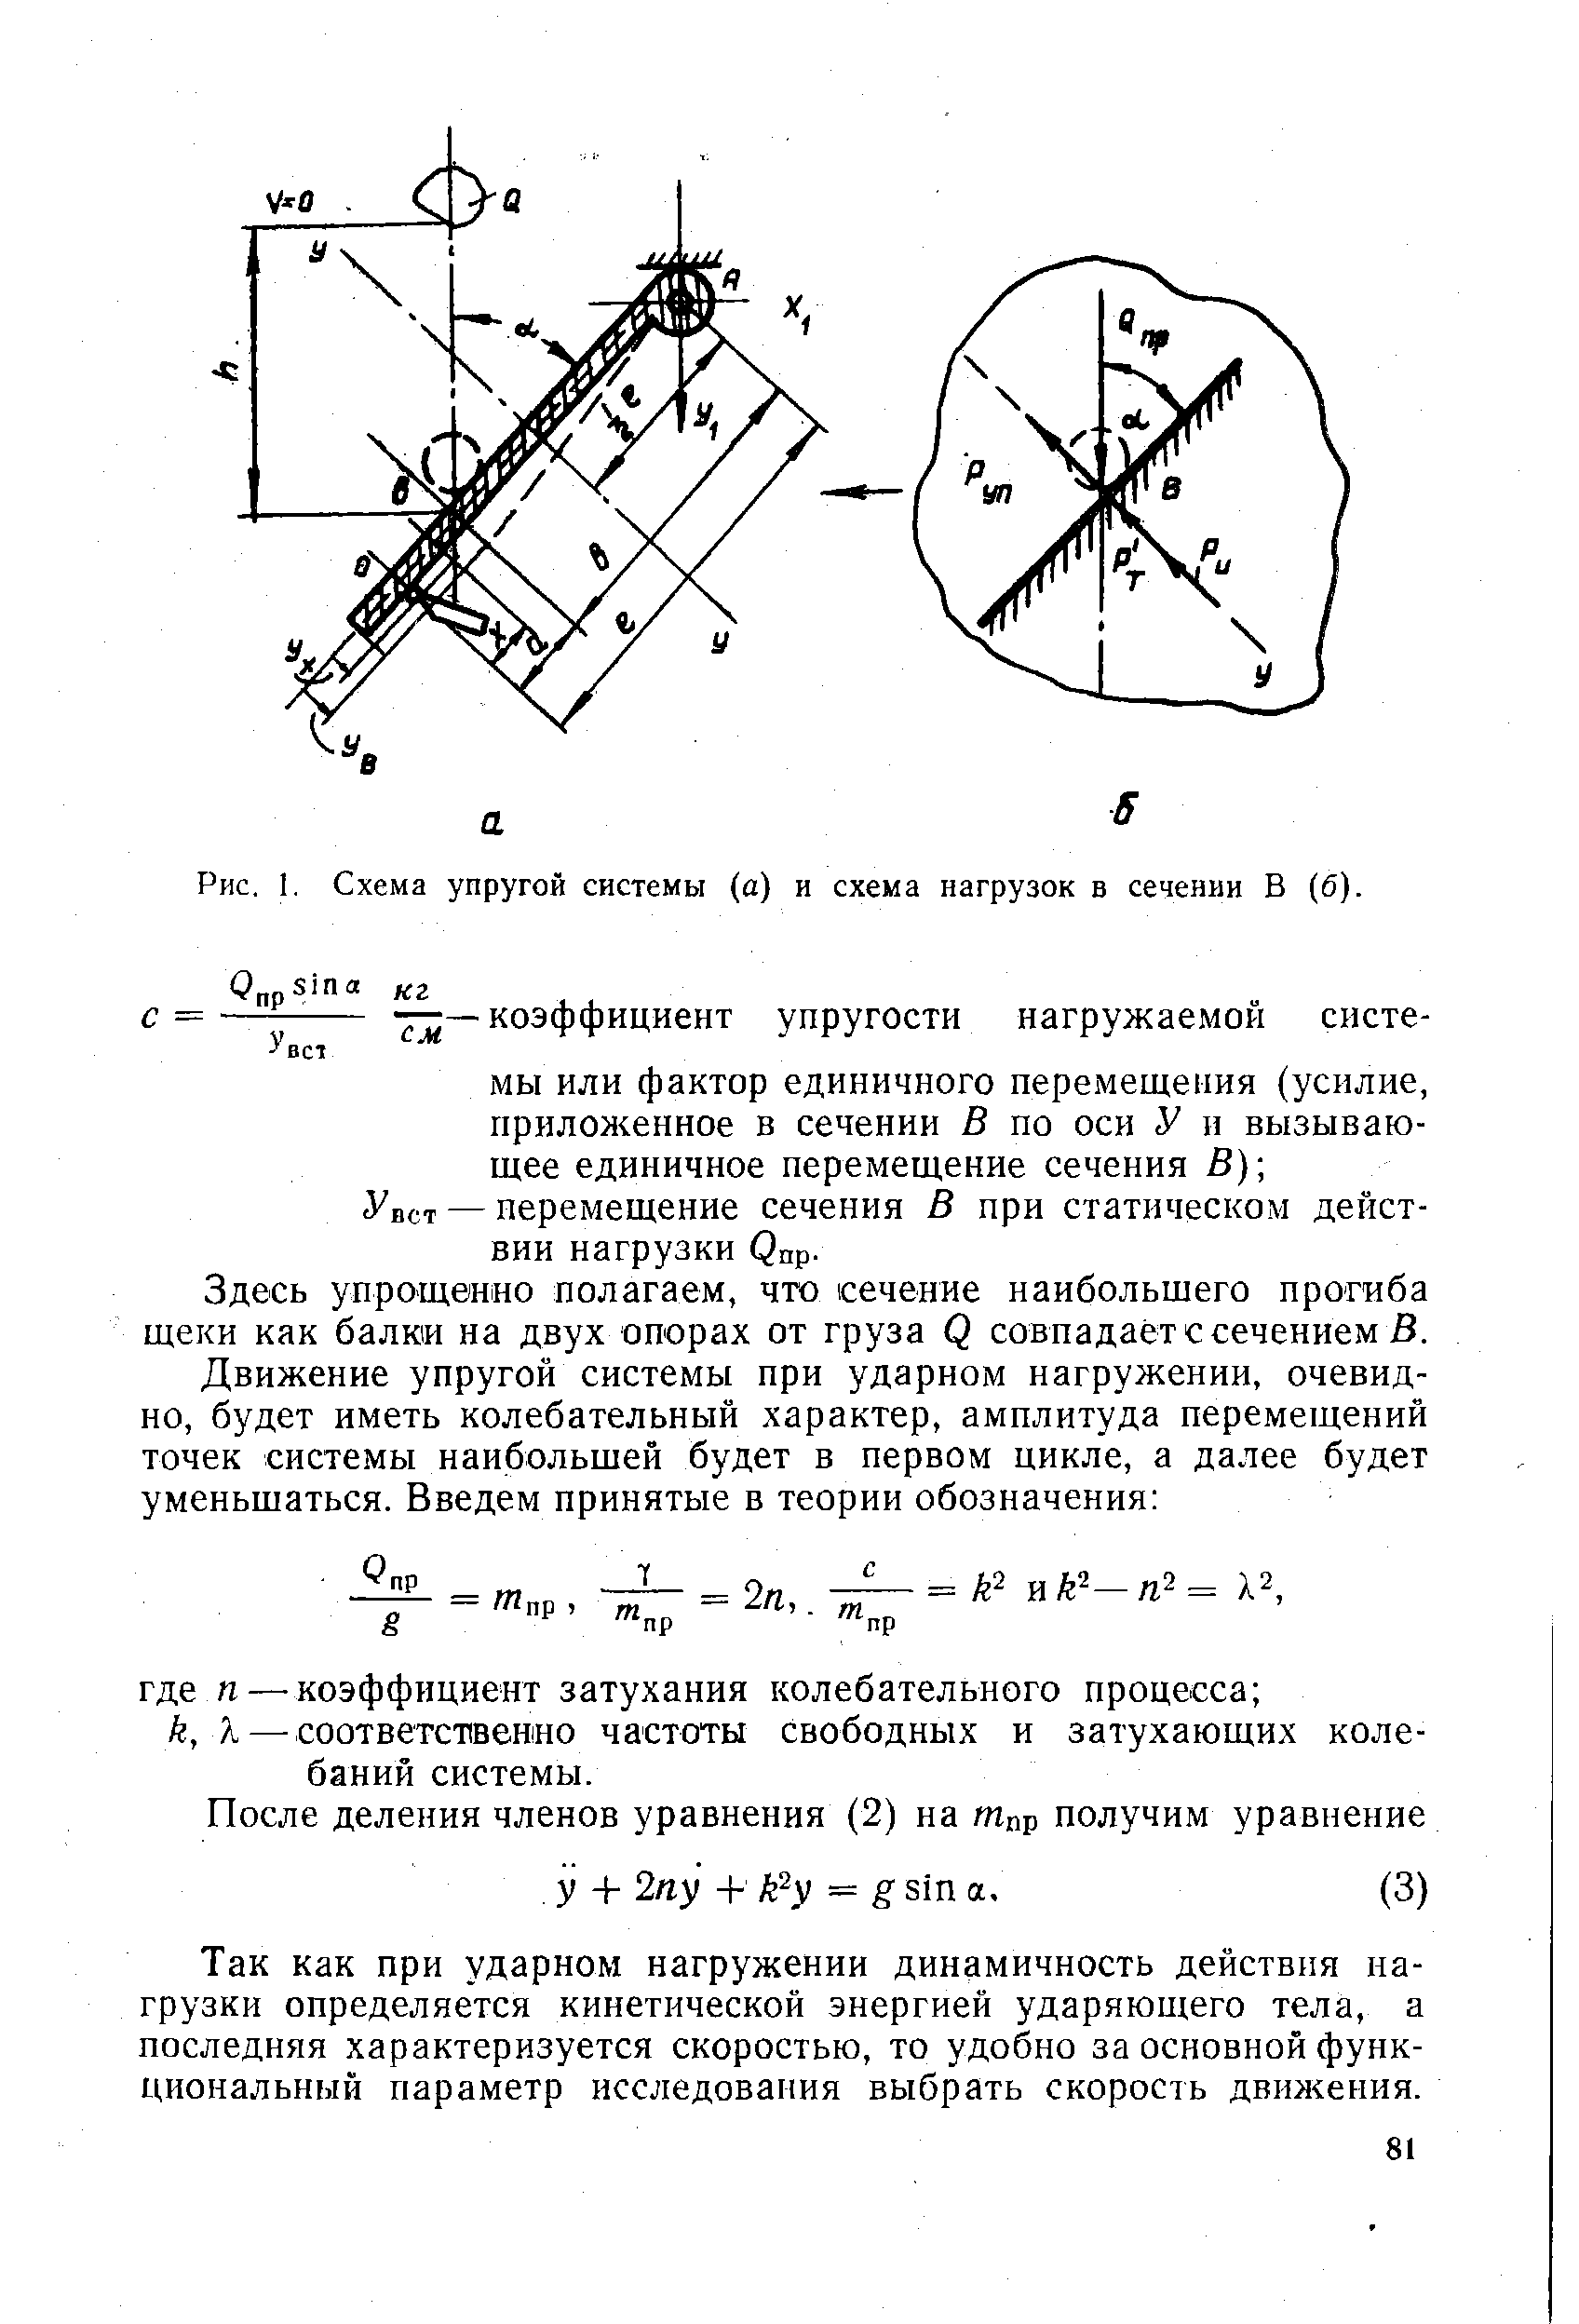 Рис. 1. Схема упругой системы (а) и схема нагрузок в сечении В (б).
